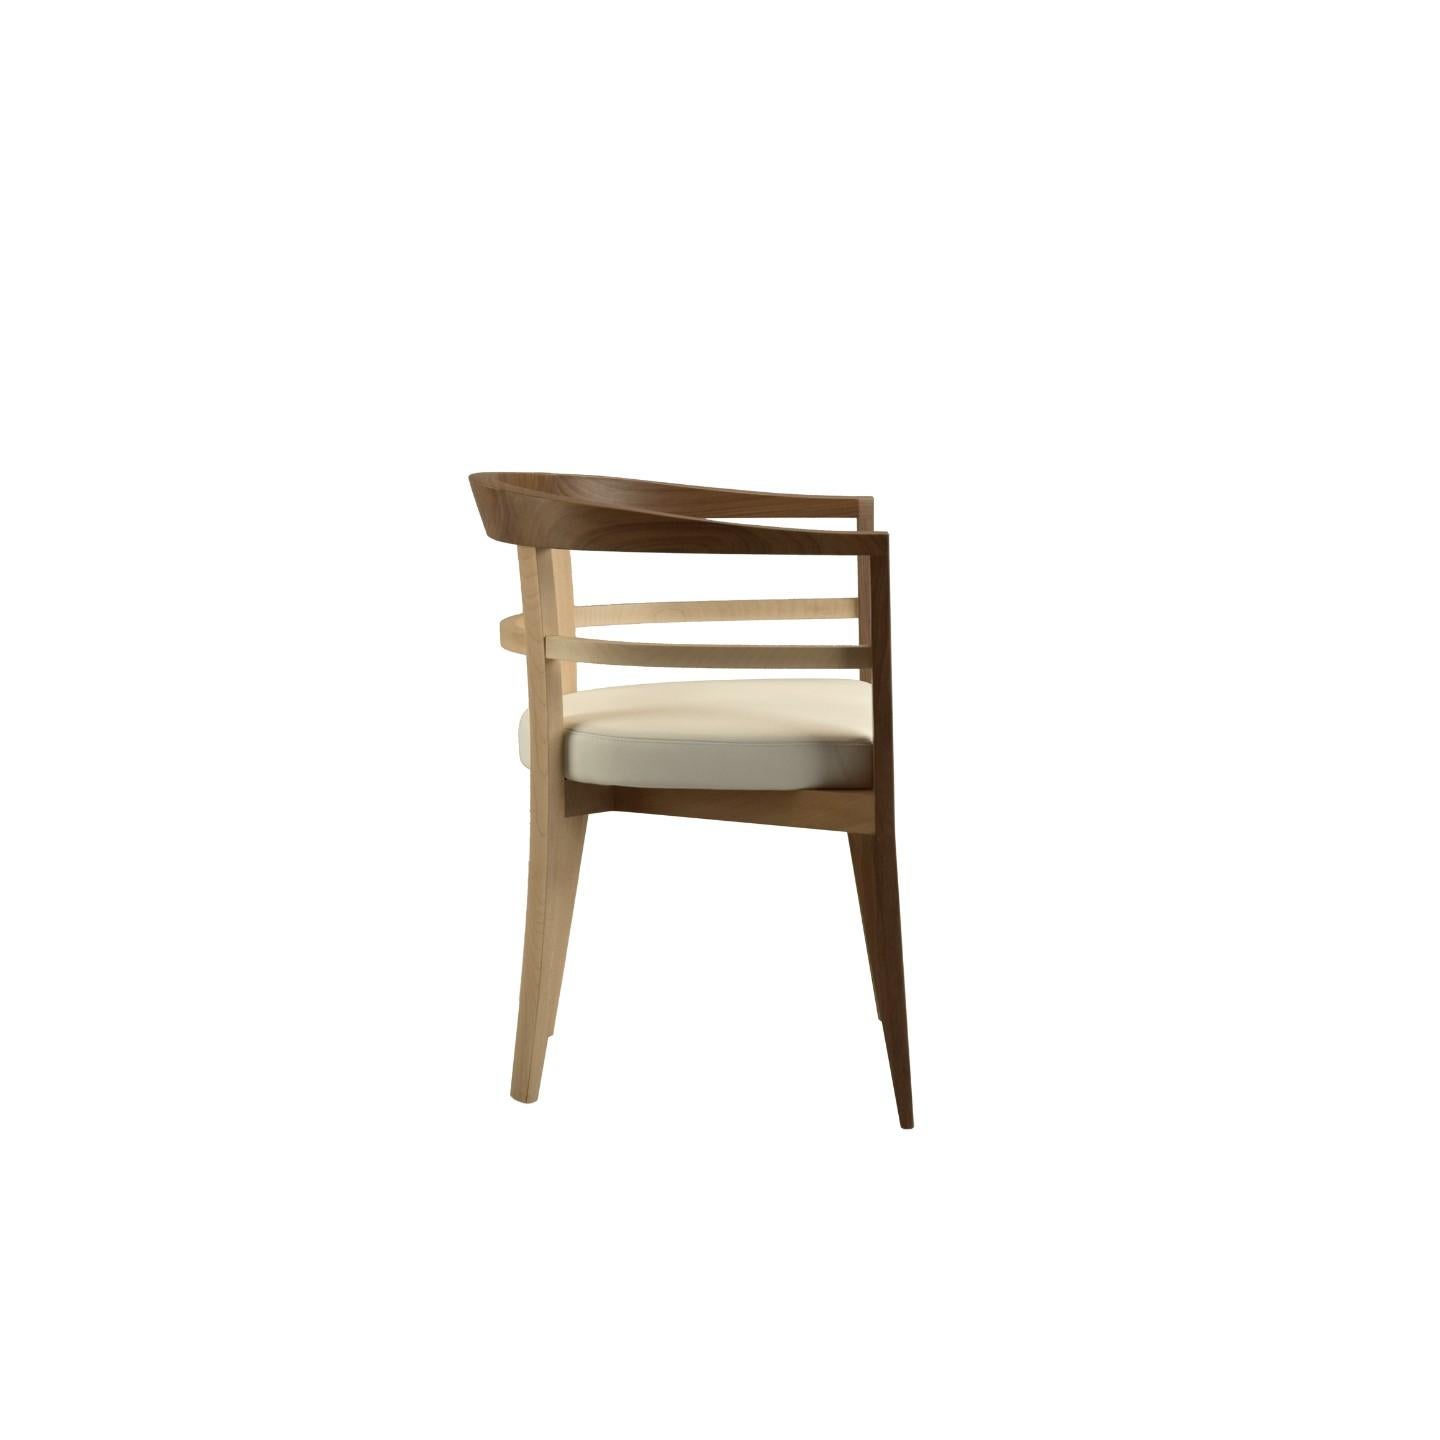 Bramante, fauteuil contemporain rembourré en bois massif d'érable et de noyer. Coussin rembourré recouvert de cuir ou de tissu.
Conçu par Franco Poli.
fabriqué en Italie par Morelato
 